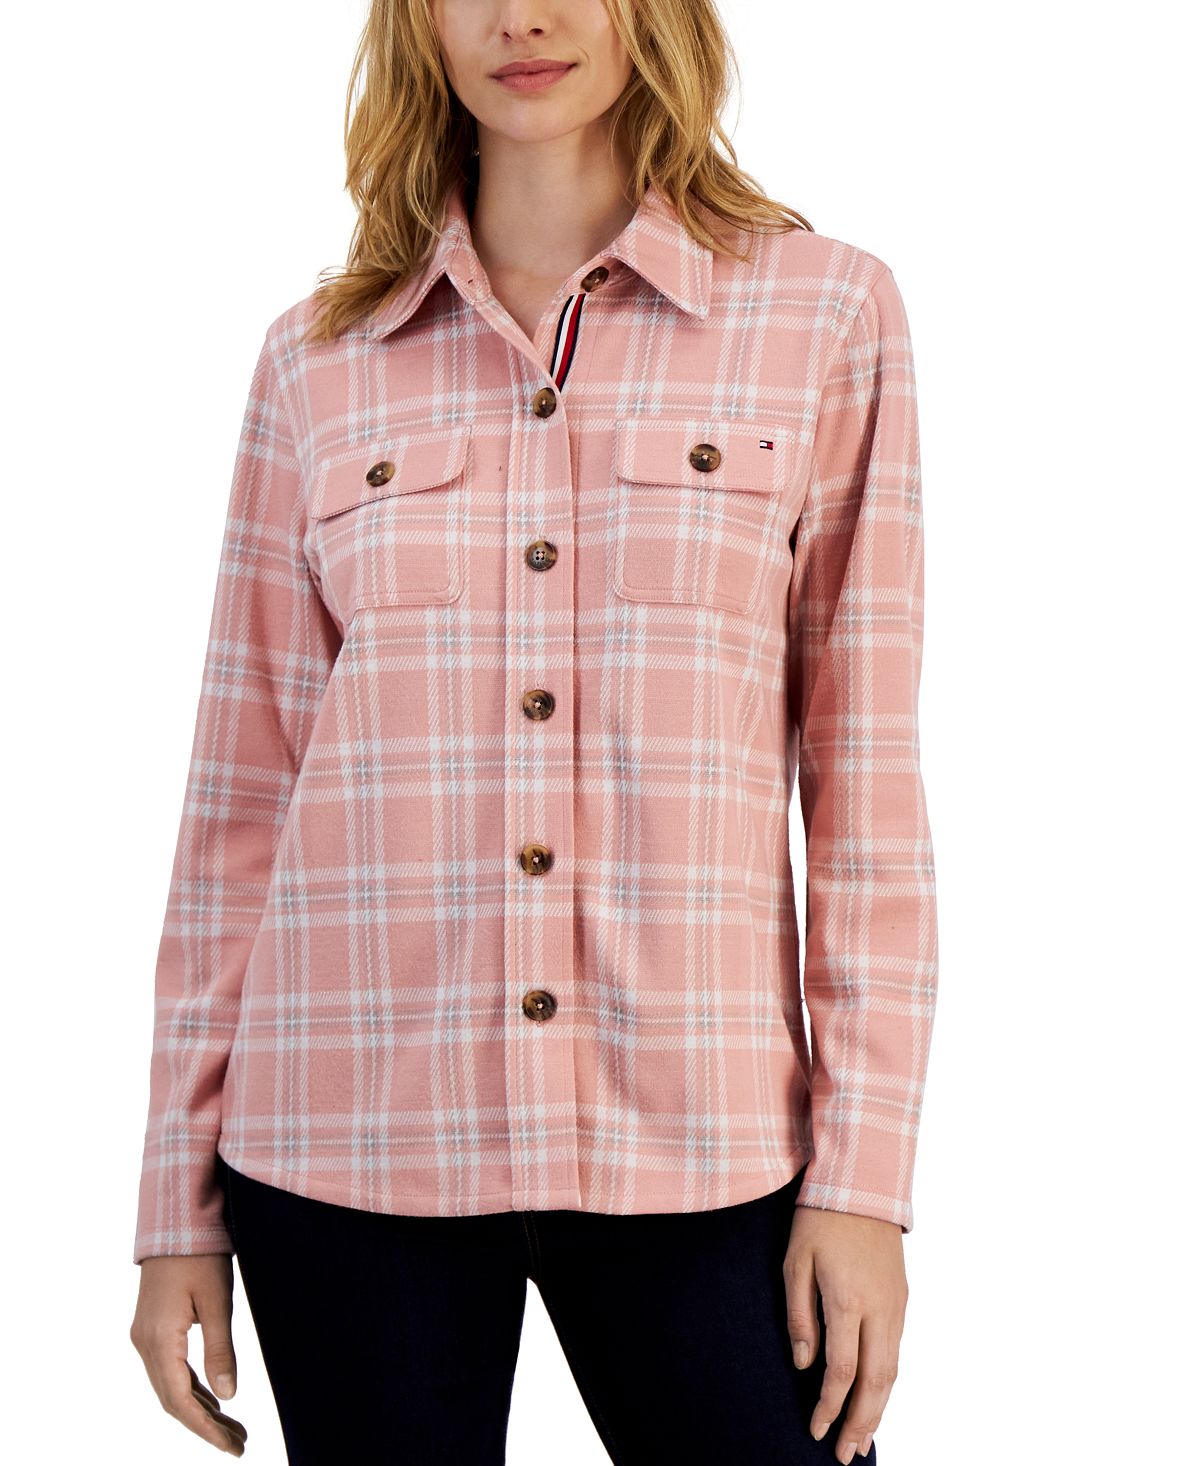 жакет рубашка h Женская куртка-рубашка в клетку с воротником Tommy Hilfiger, мульти